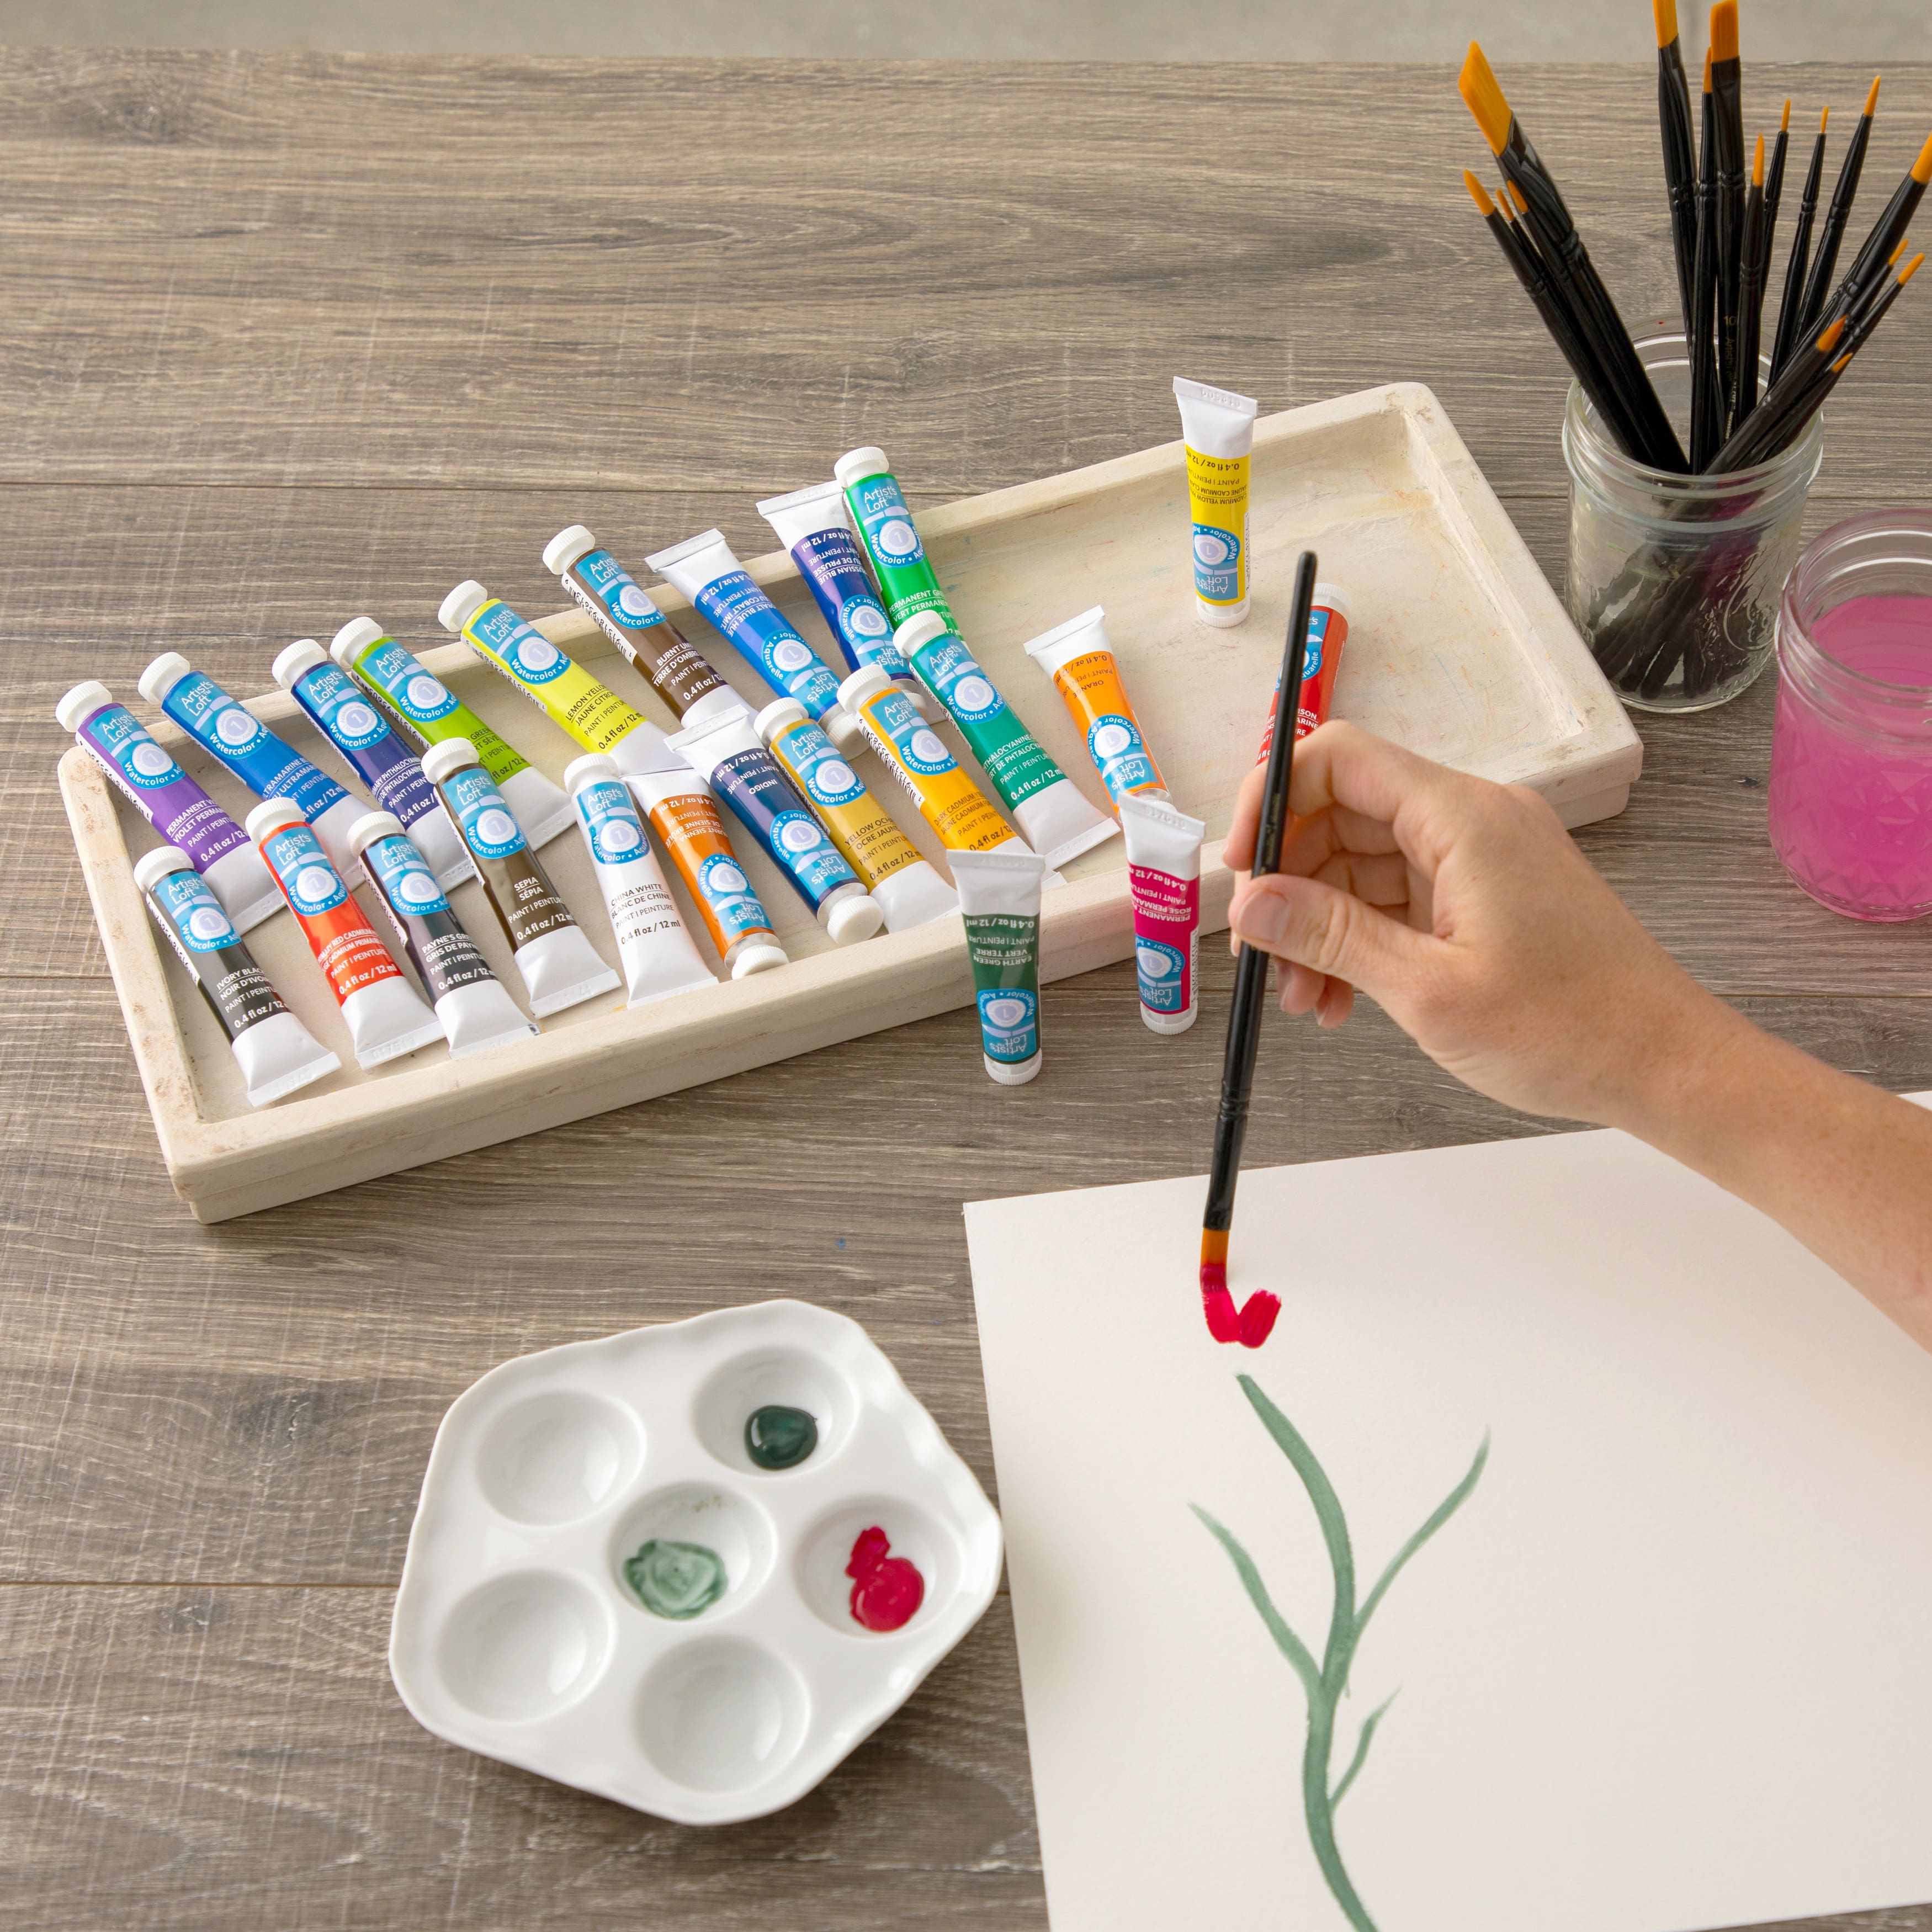 Watercolor Paint Set by Artist's Loft™, 24 Pieces